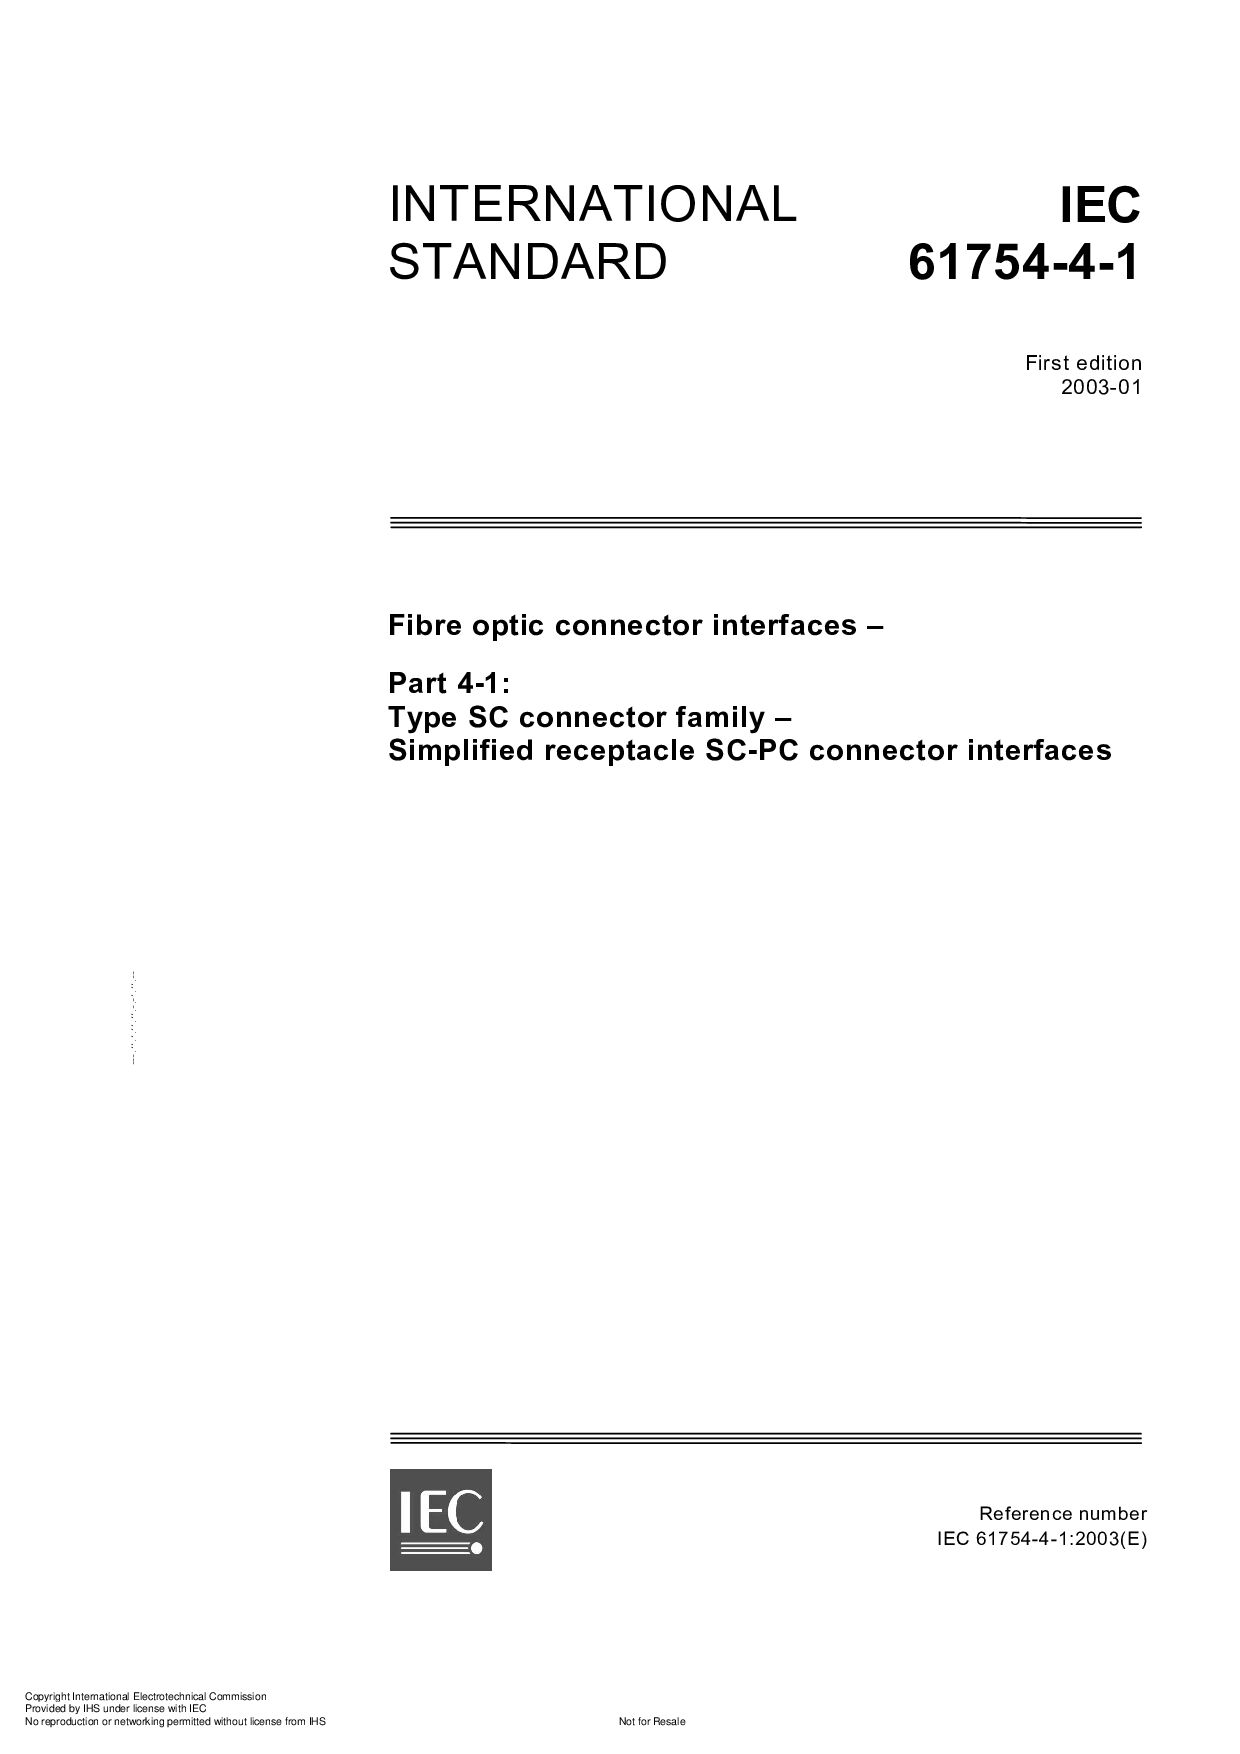 IEC 61754-4-1:2003封面图